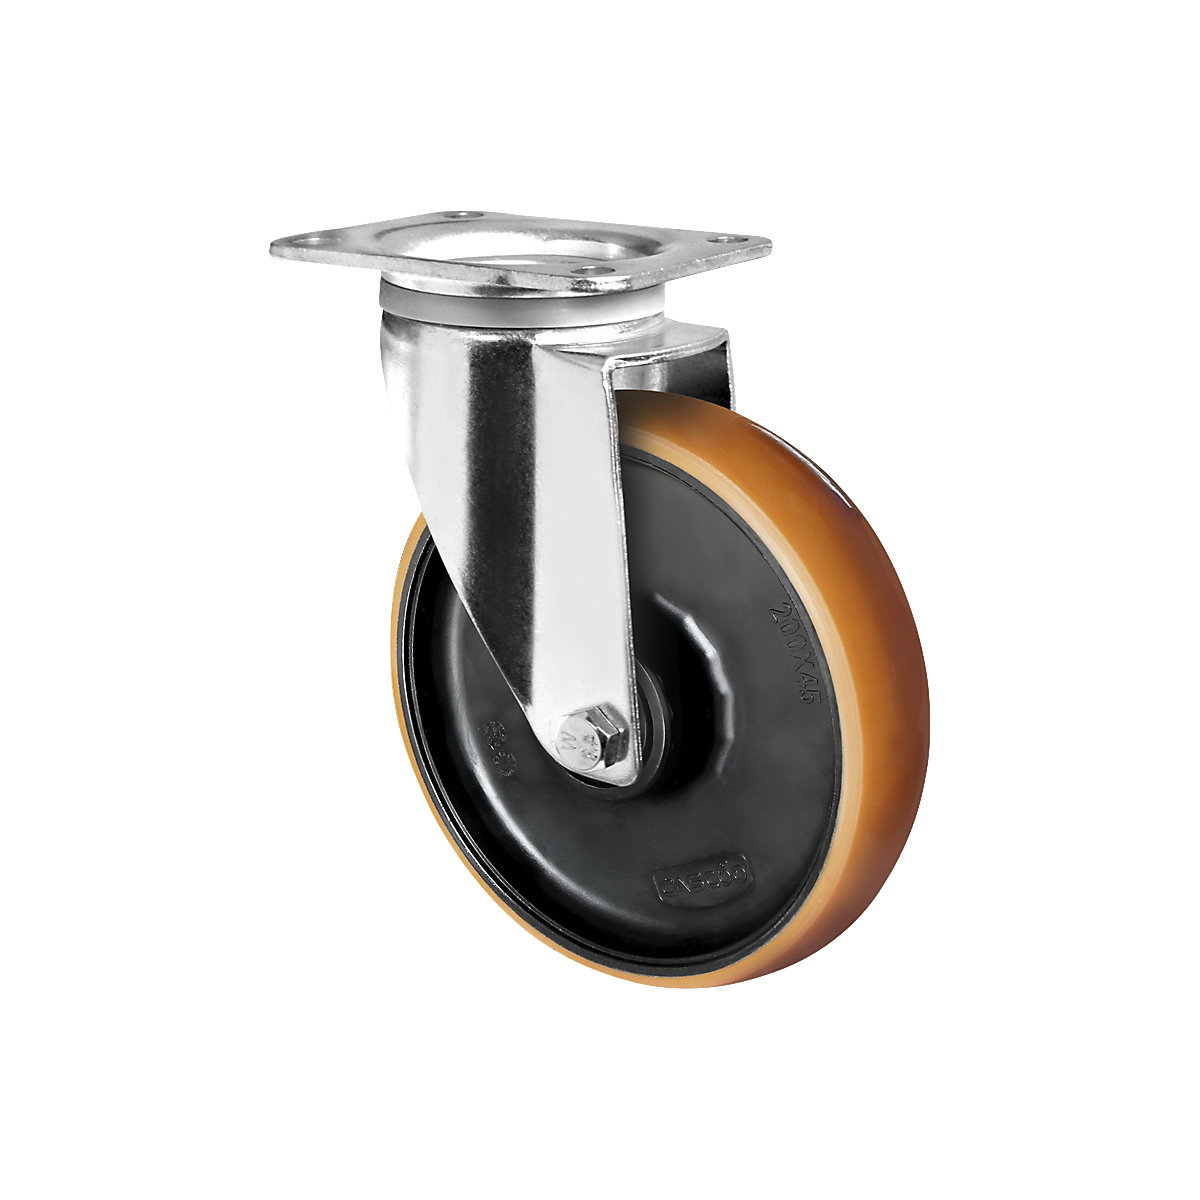 Roulette polyuréthane marron sur jante polyamide, Ø x largeur roulette 125 x 50 mm, roulette pivotante